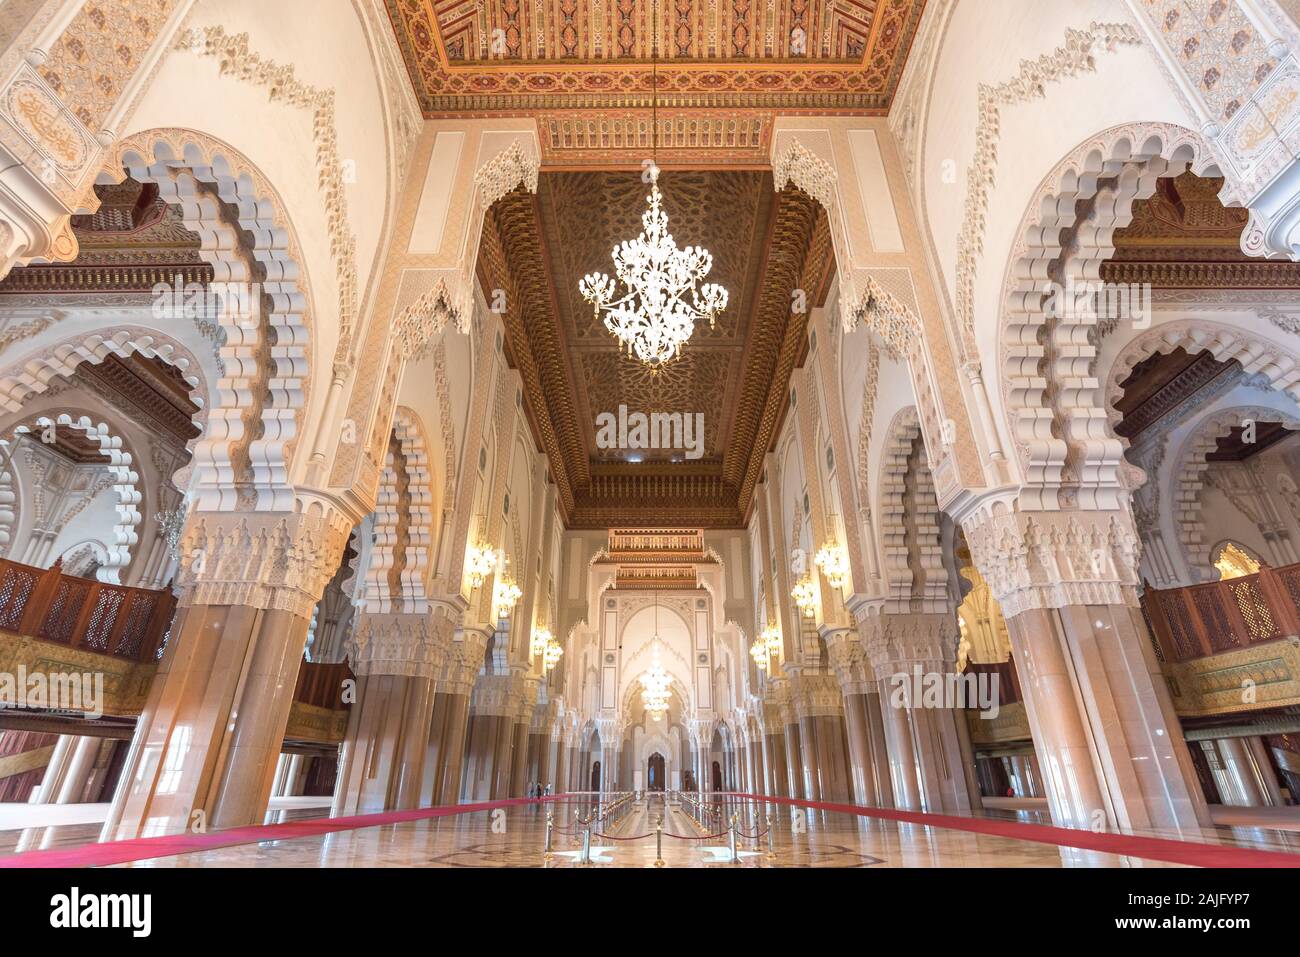 Casablanca, Marokko: Innenraum (gebetsraum) der Hassan II Moschee mit Säulen, Bögen und Kronleuchtern aus Murano-Glas. Islamische Architektur Stockfoto